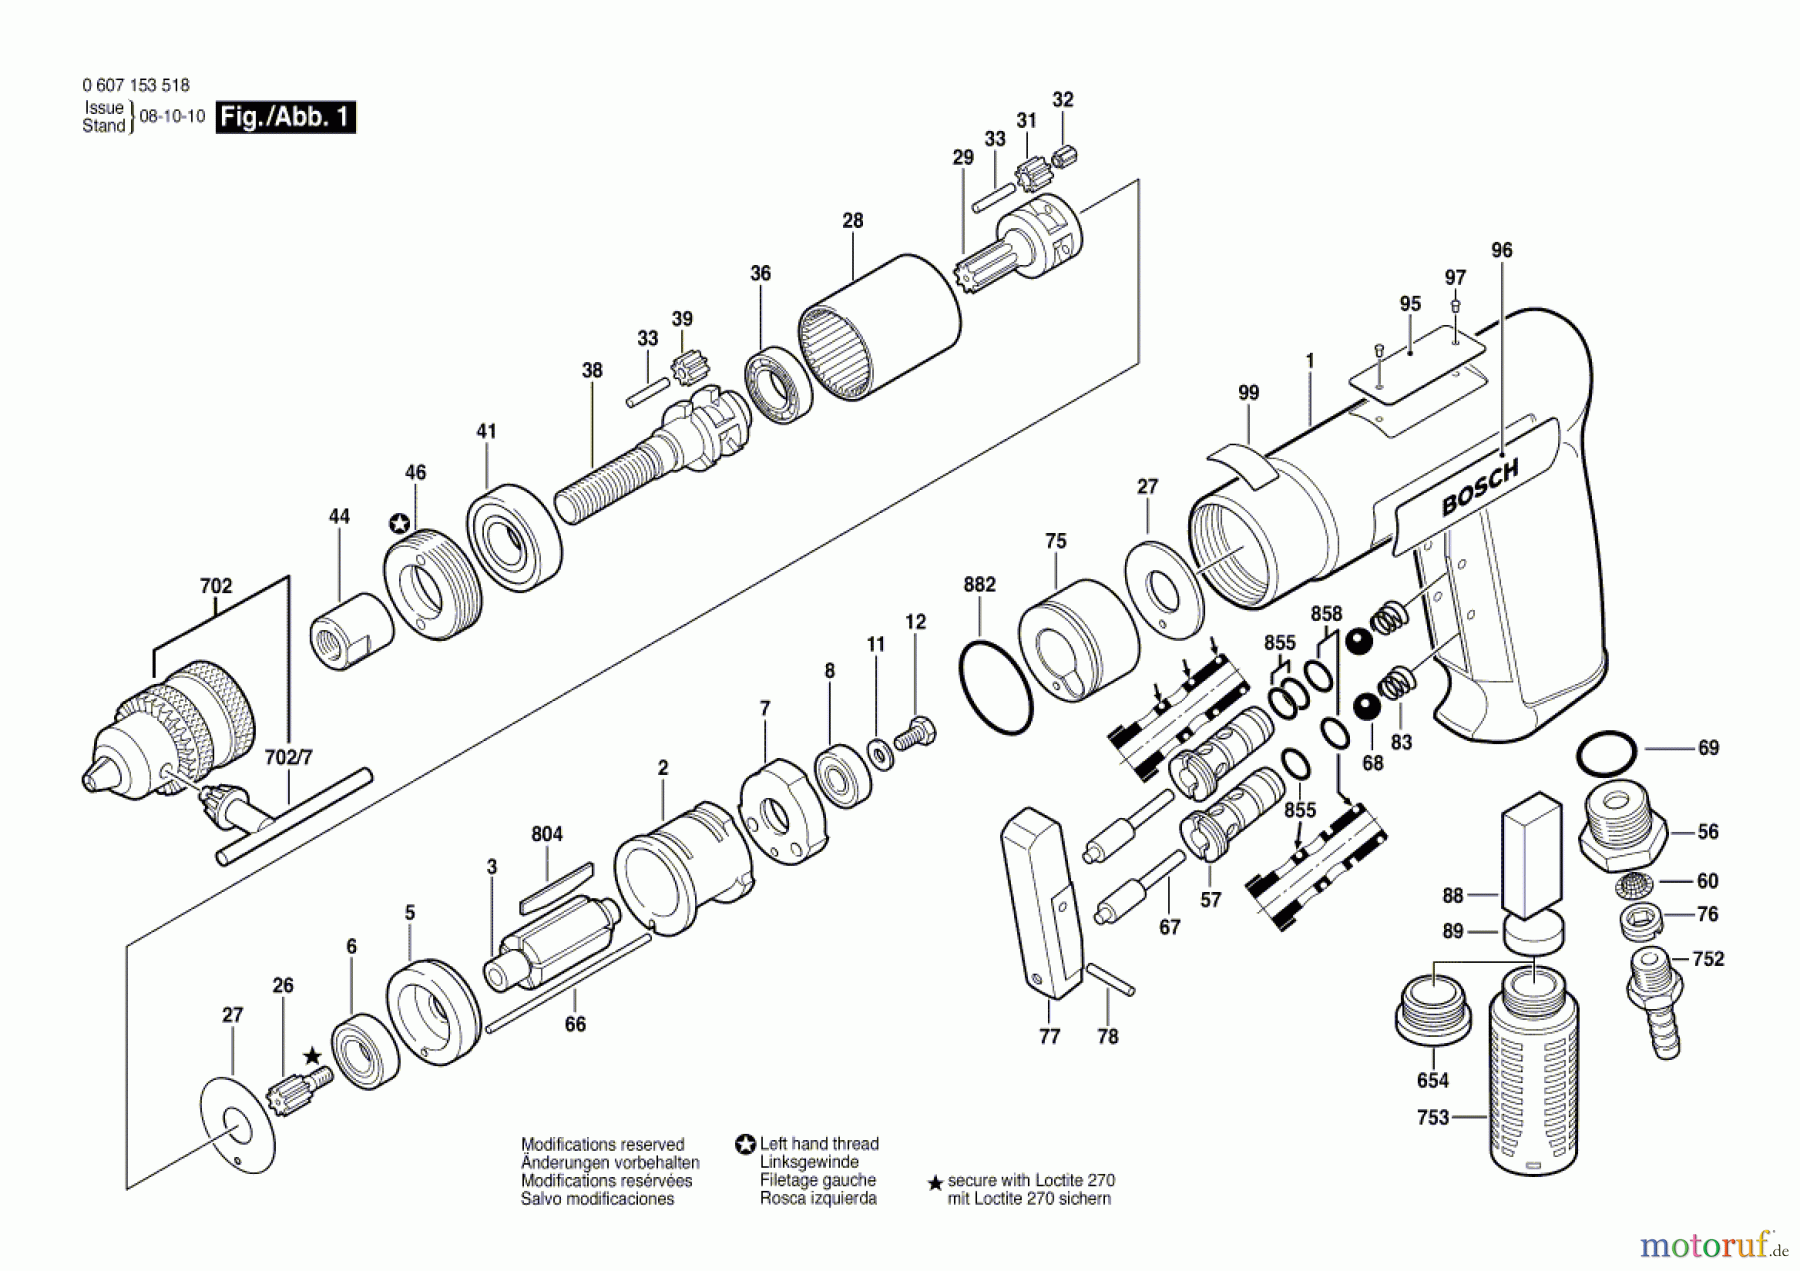  Bosch Werkzeug Pw-Bohrmaschine-Ind 180 WATT-SERIE Seite 1